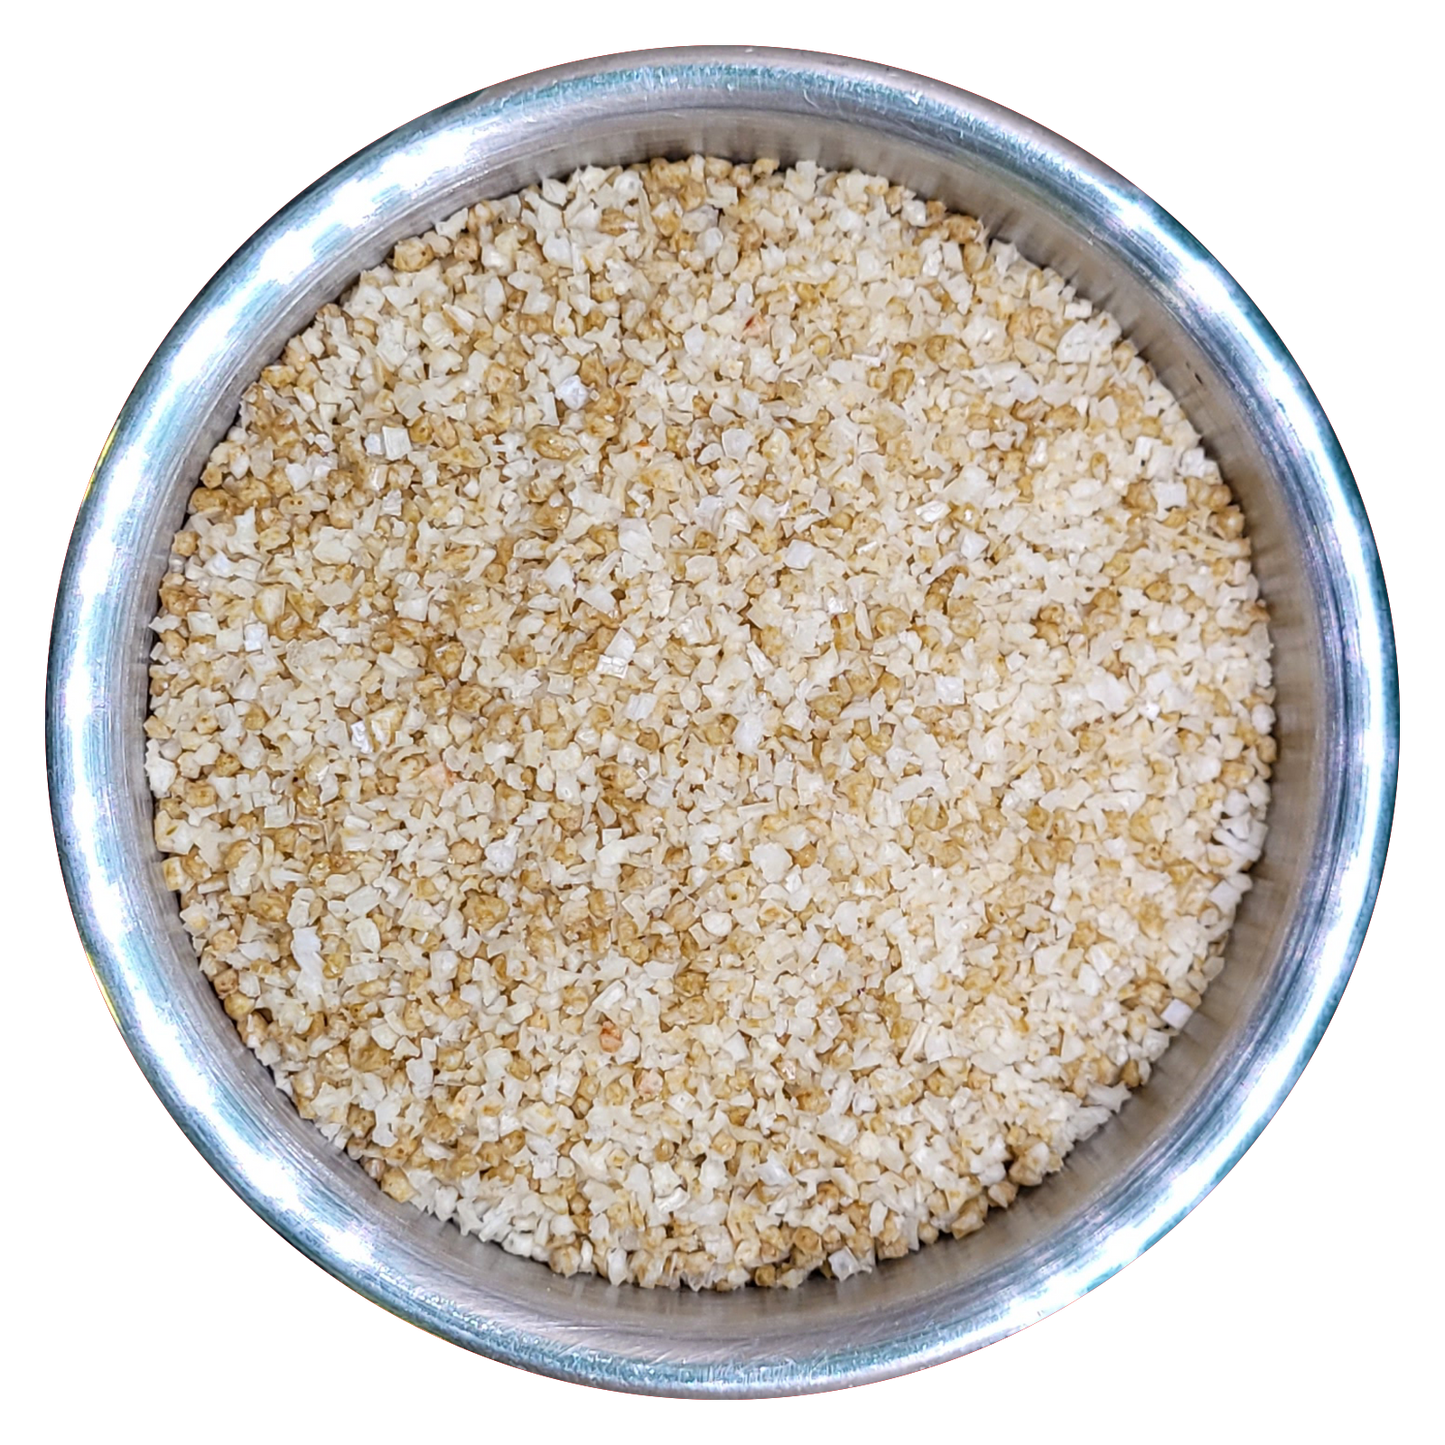 Jalapeno Salt